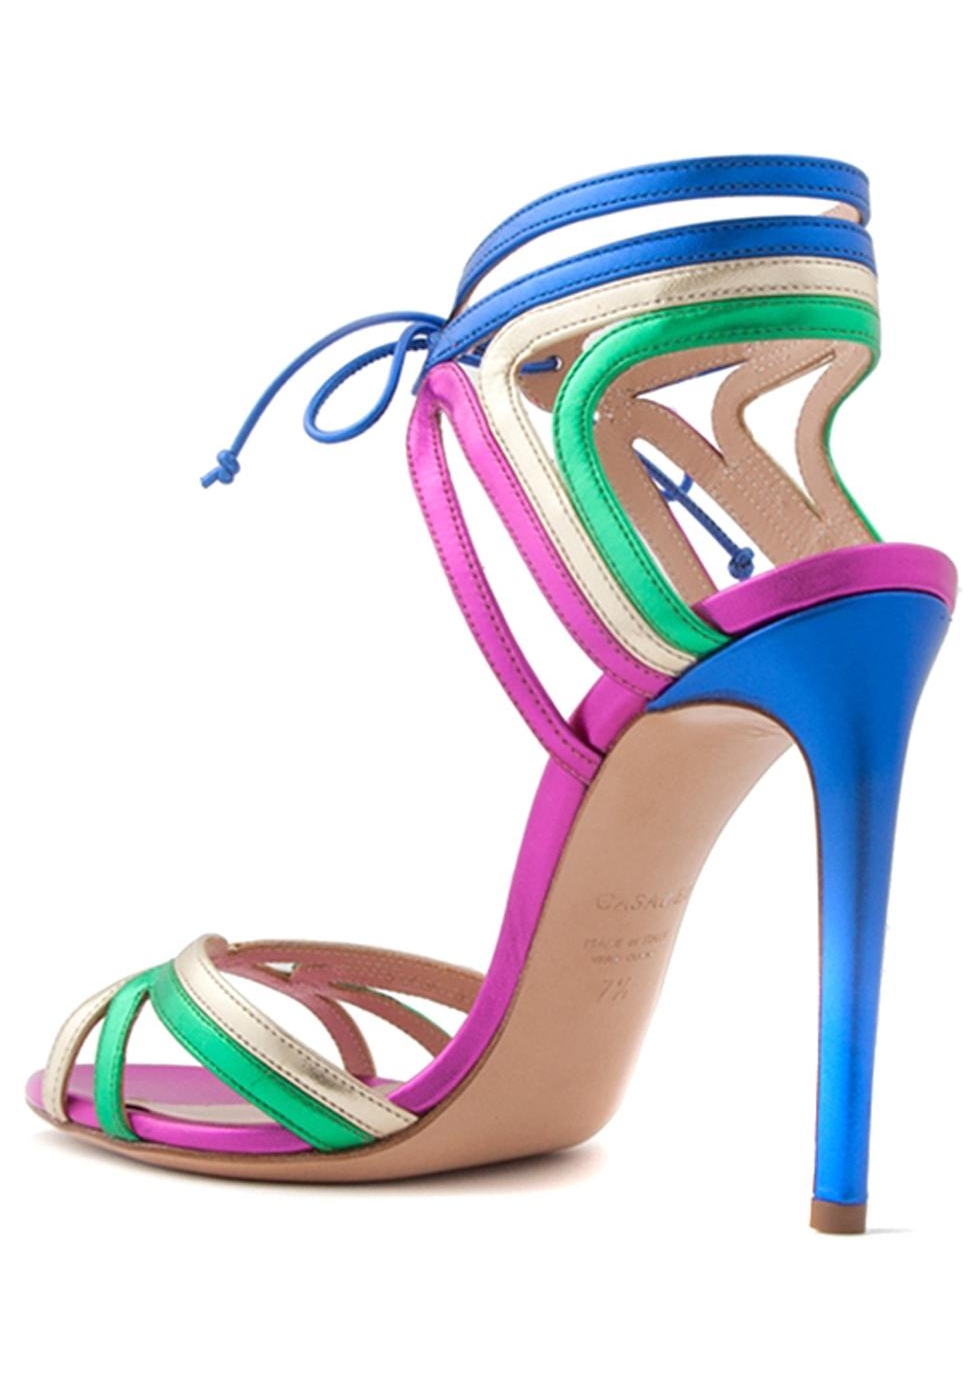 Casadei Women's high stiletto sandals in Multi-Color laminated calf ...